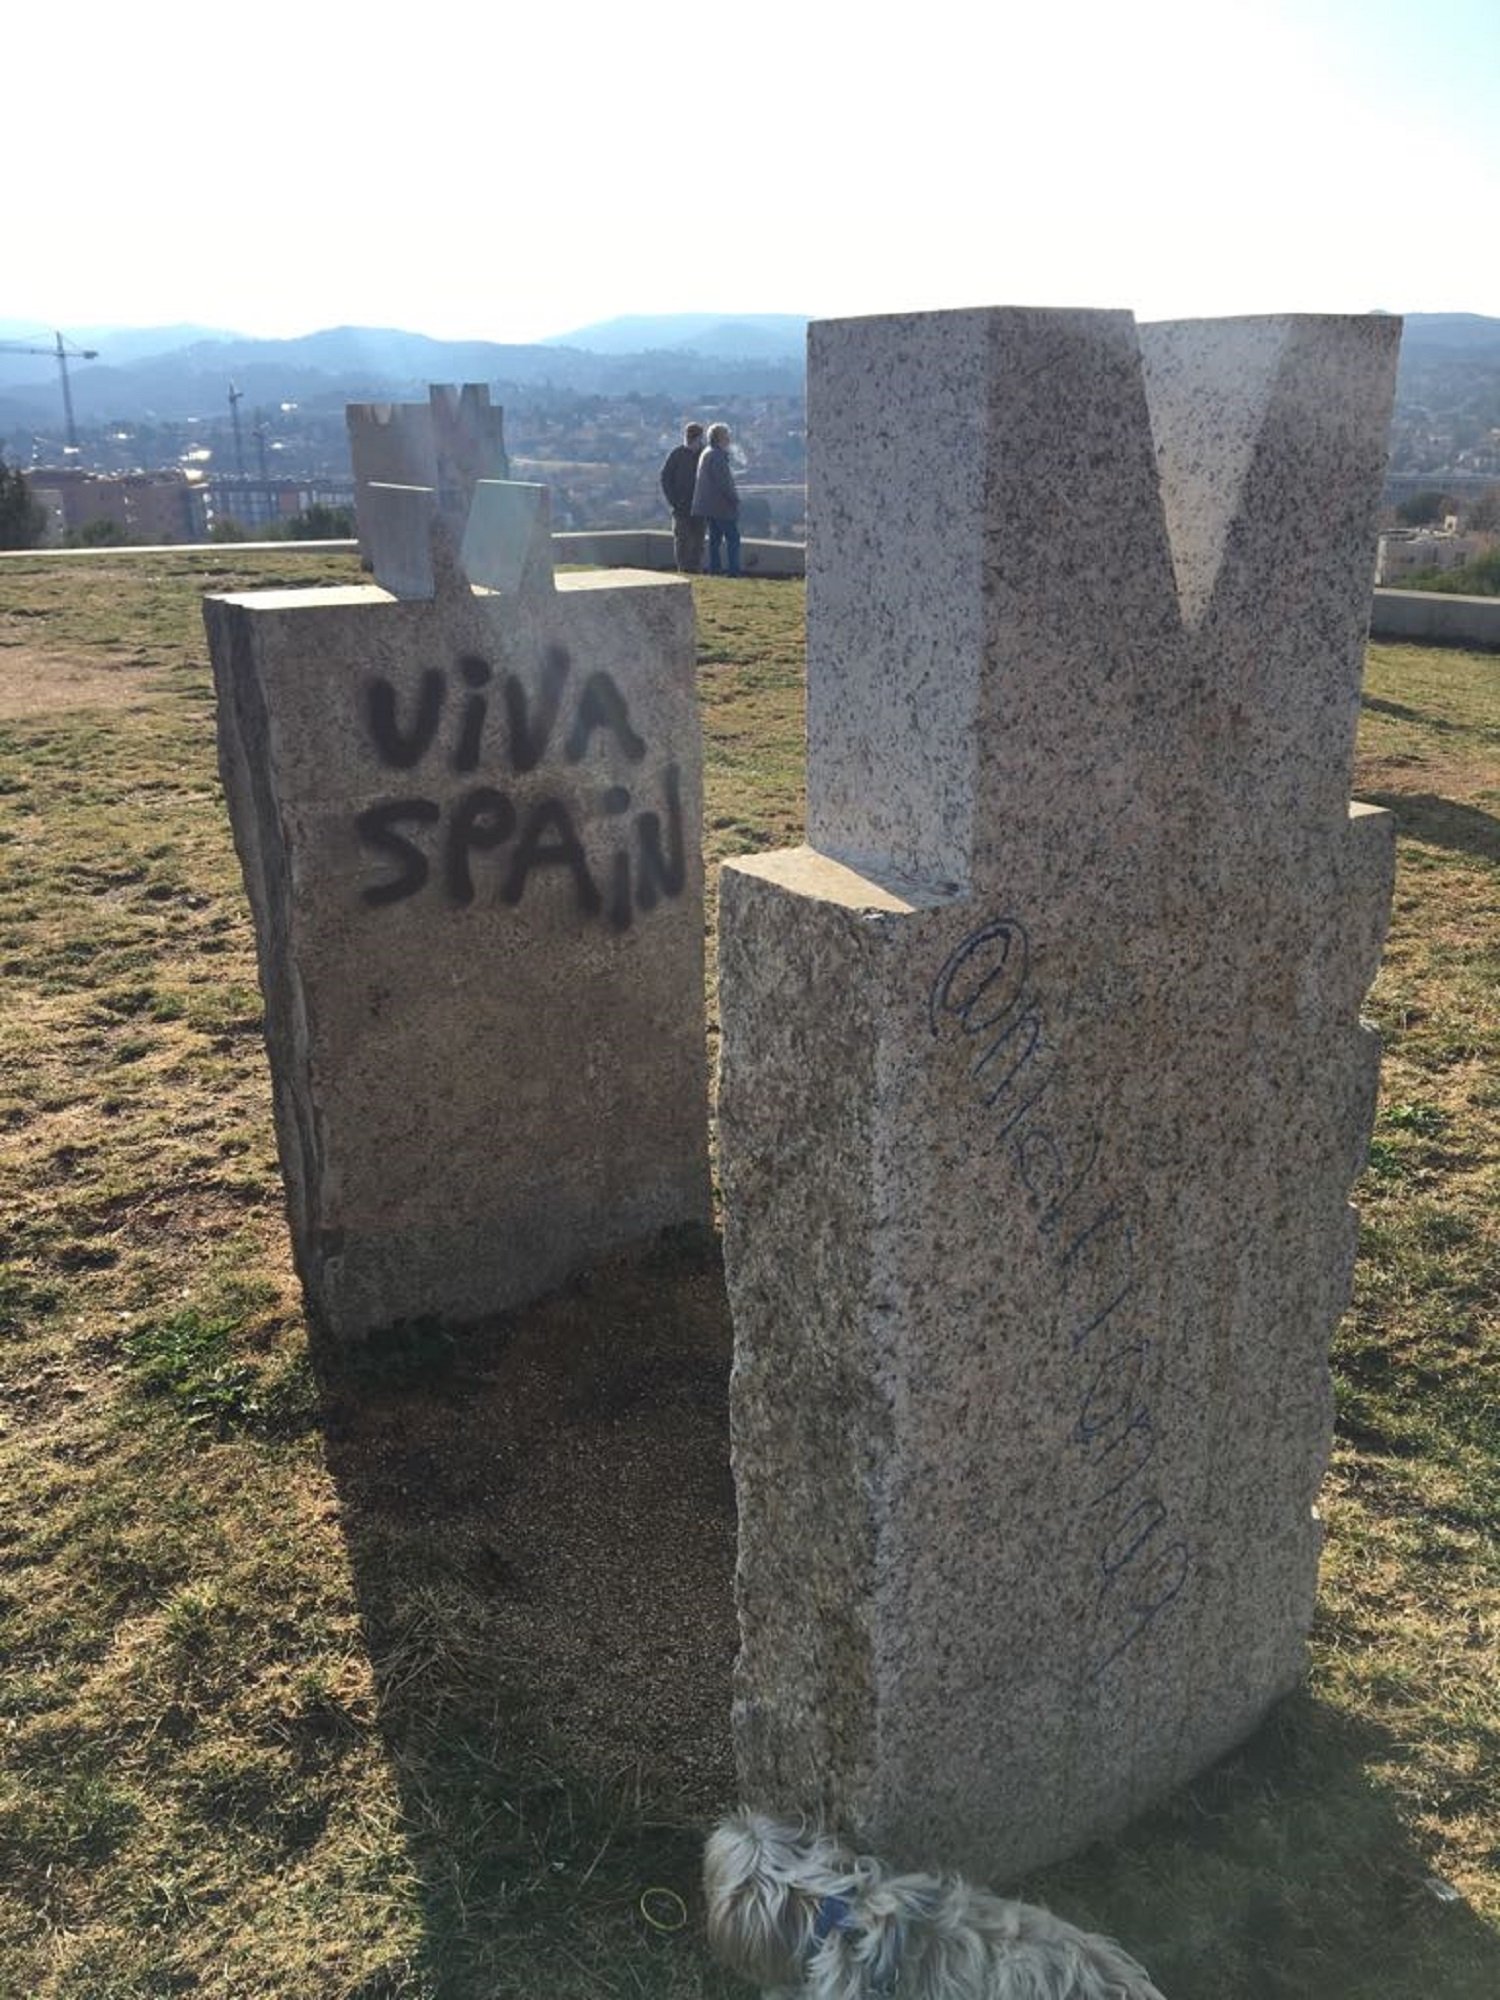 Atac espanyolista a un monument de Sant Cugat